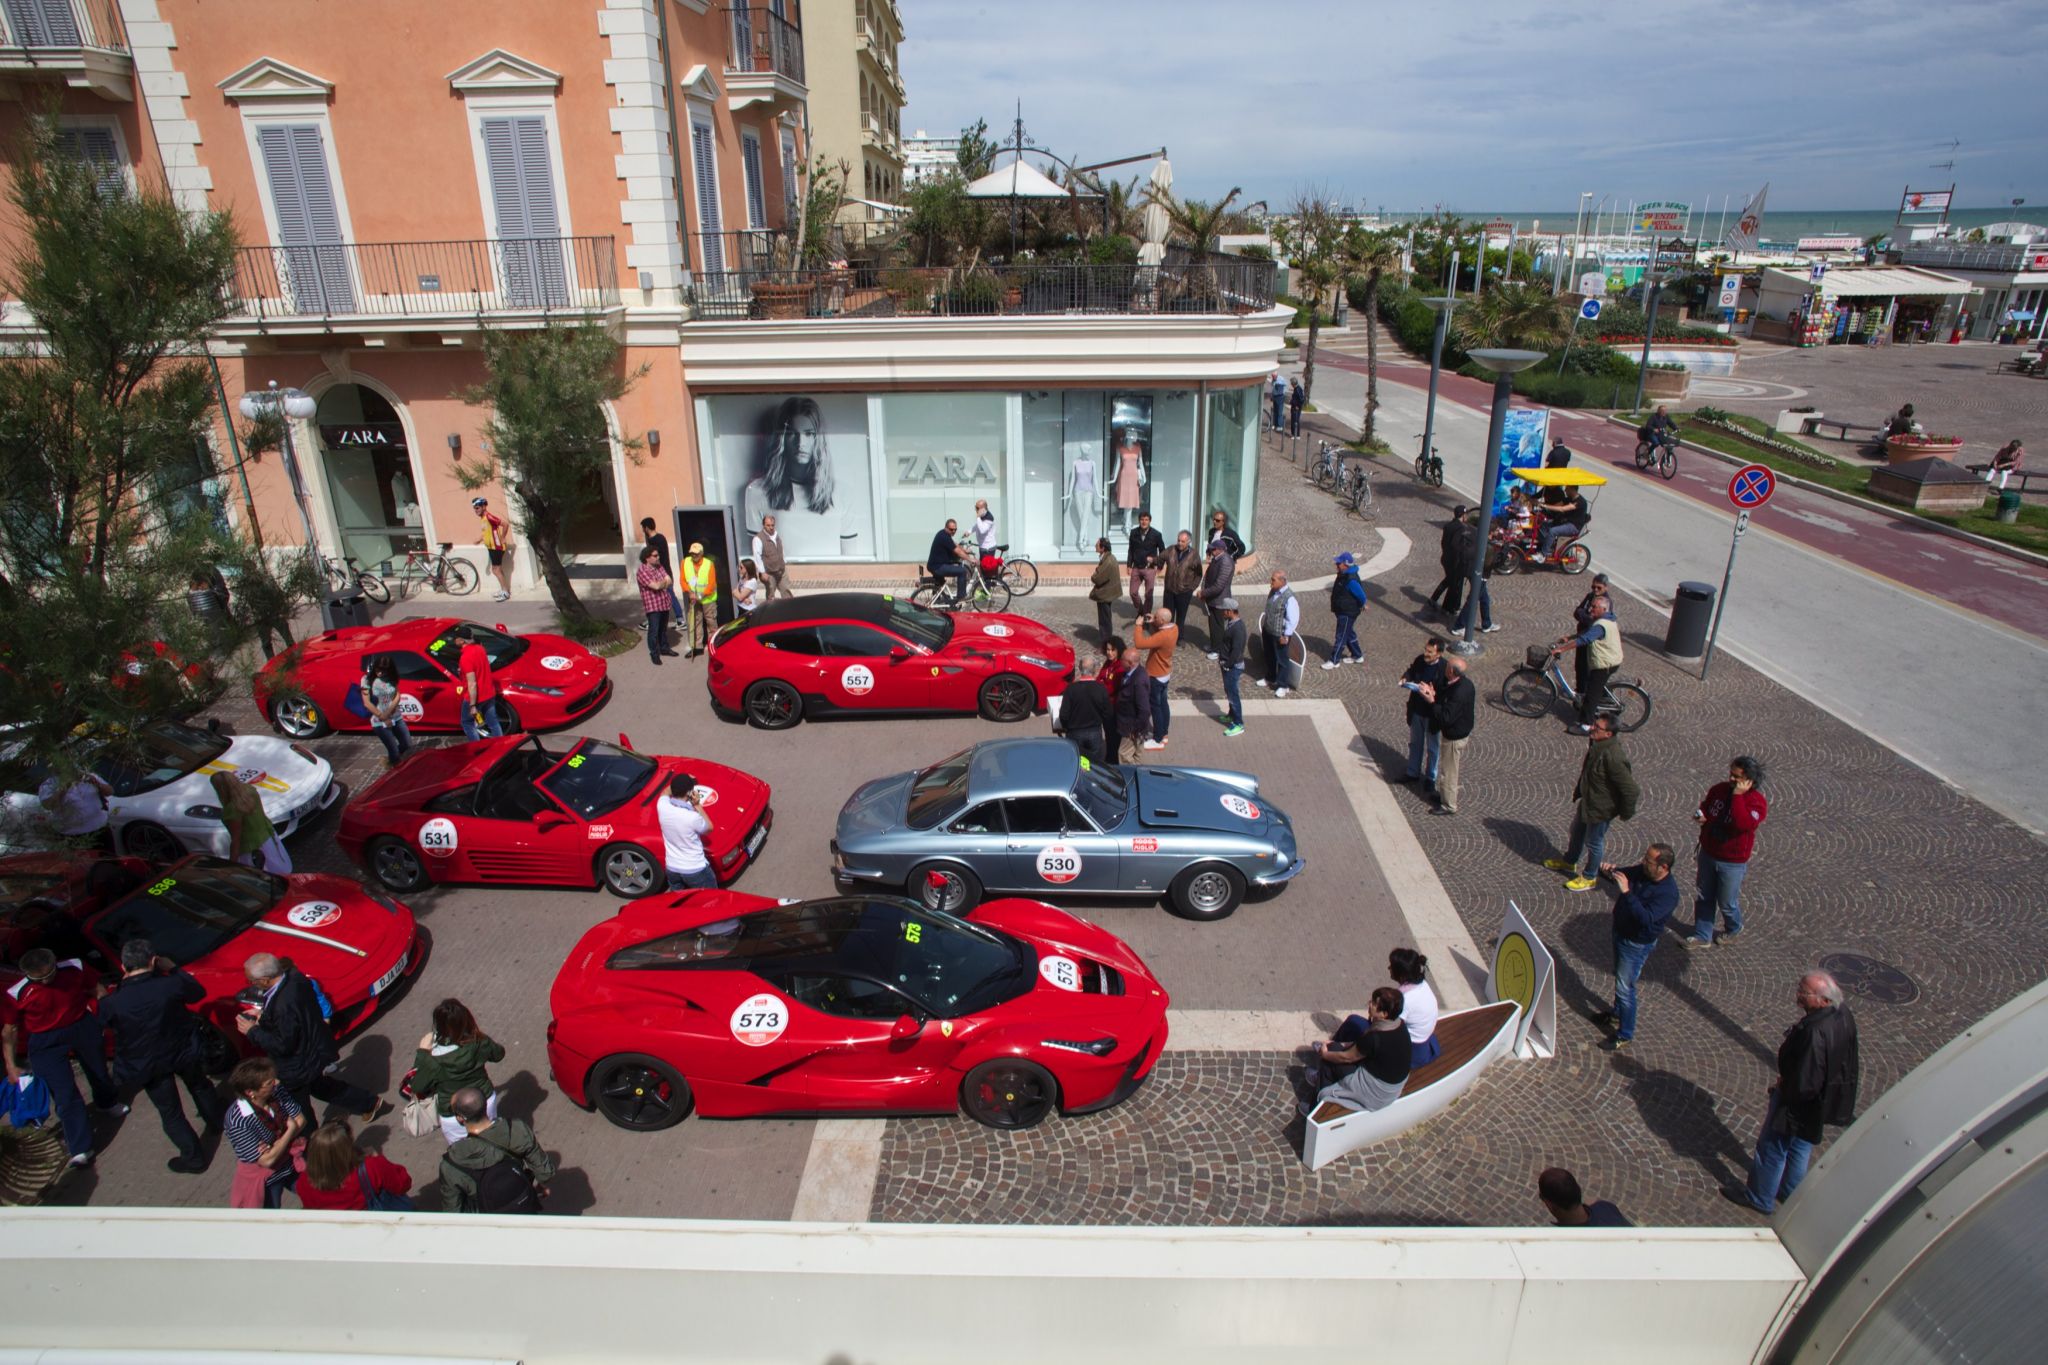 2014 Ferrari Tribute to 1000 Miglia